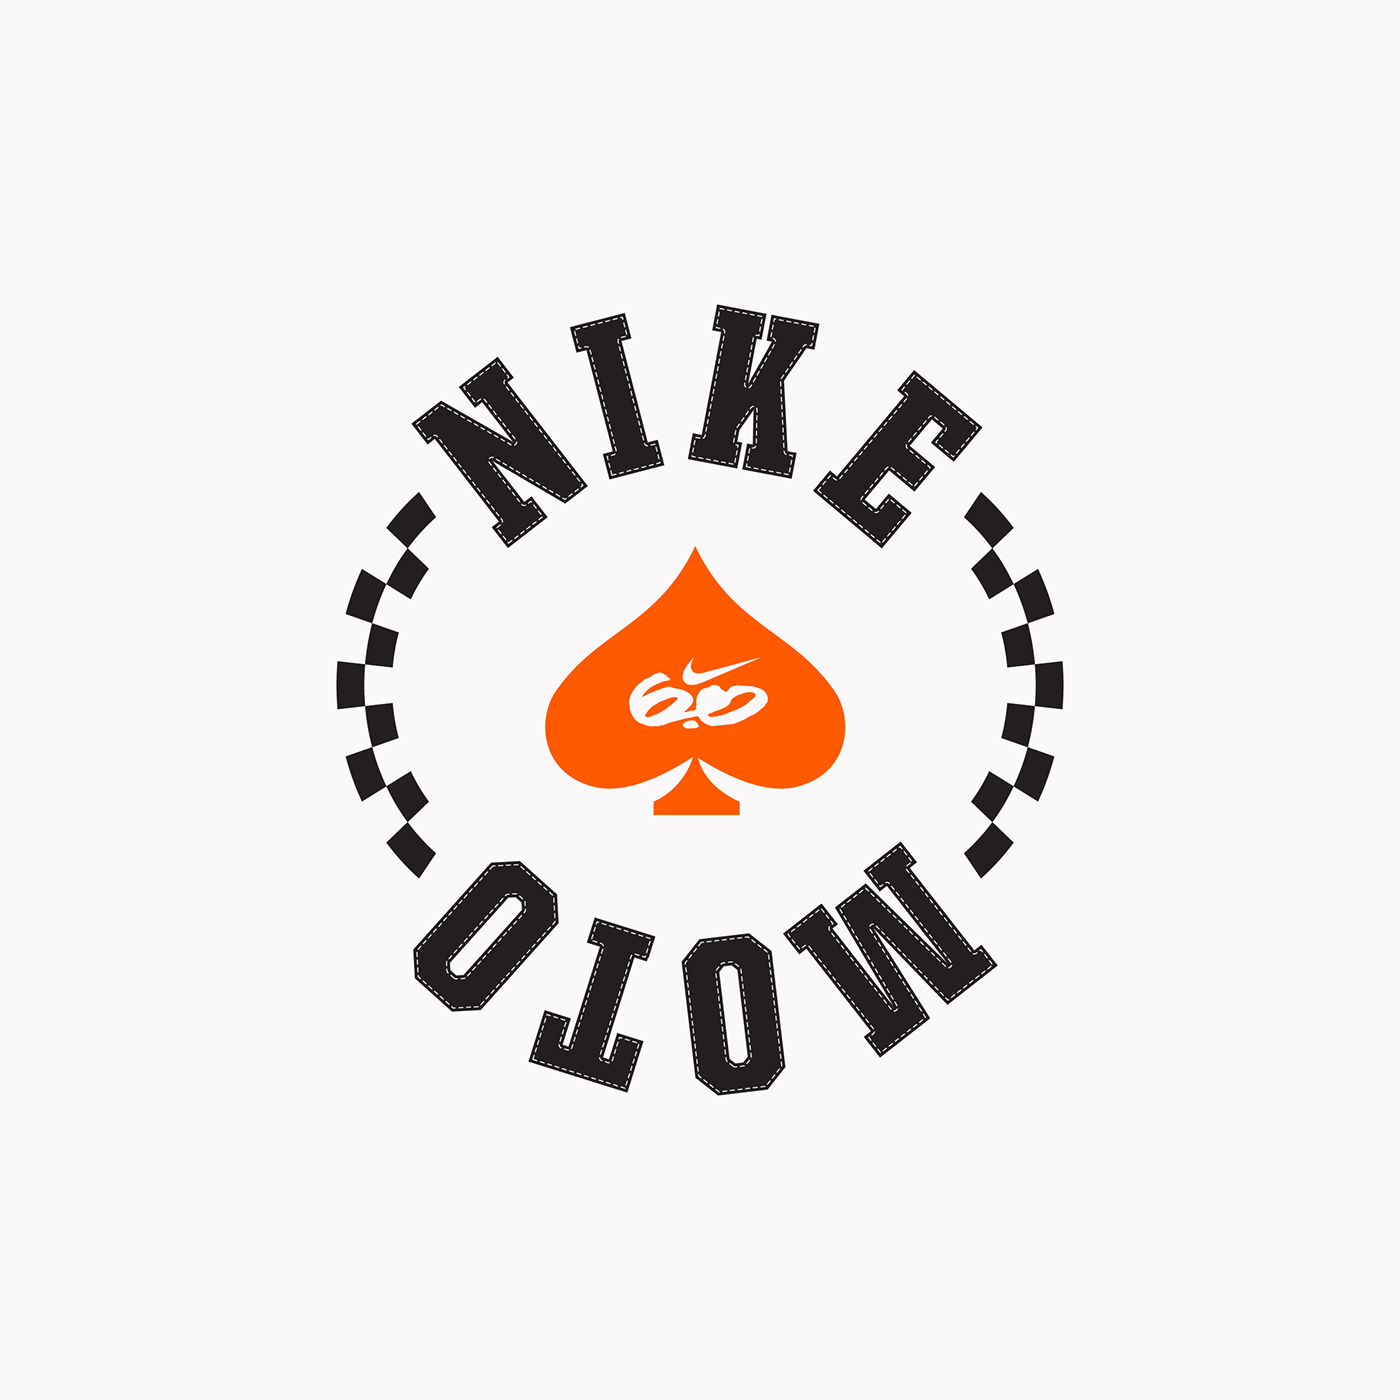 badge Badges Clothing graphic logo logo designer logos Motocross Nike speed